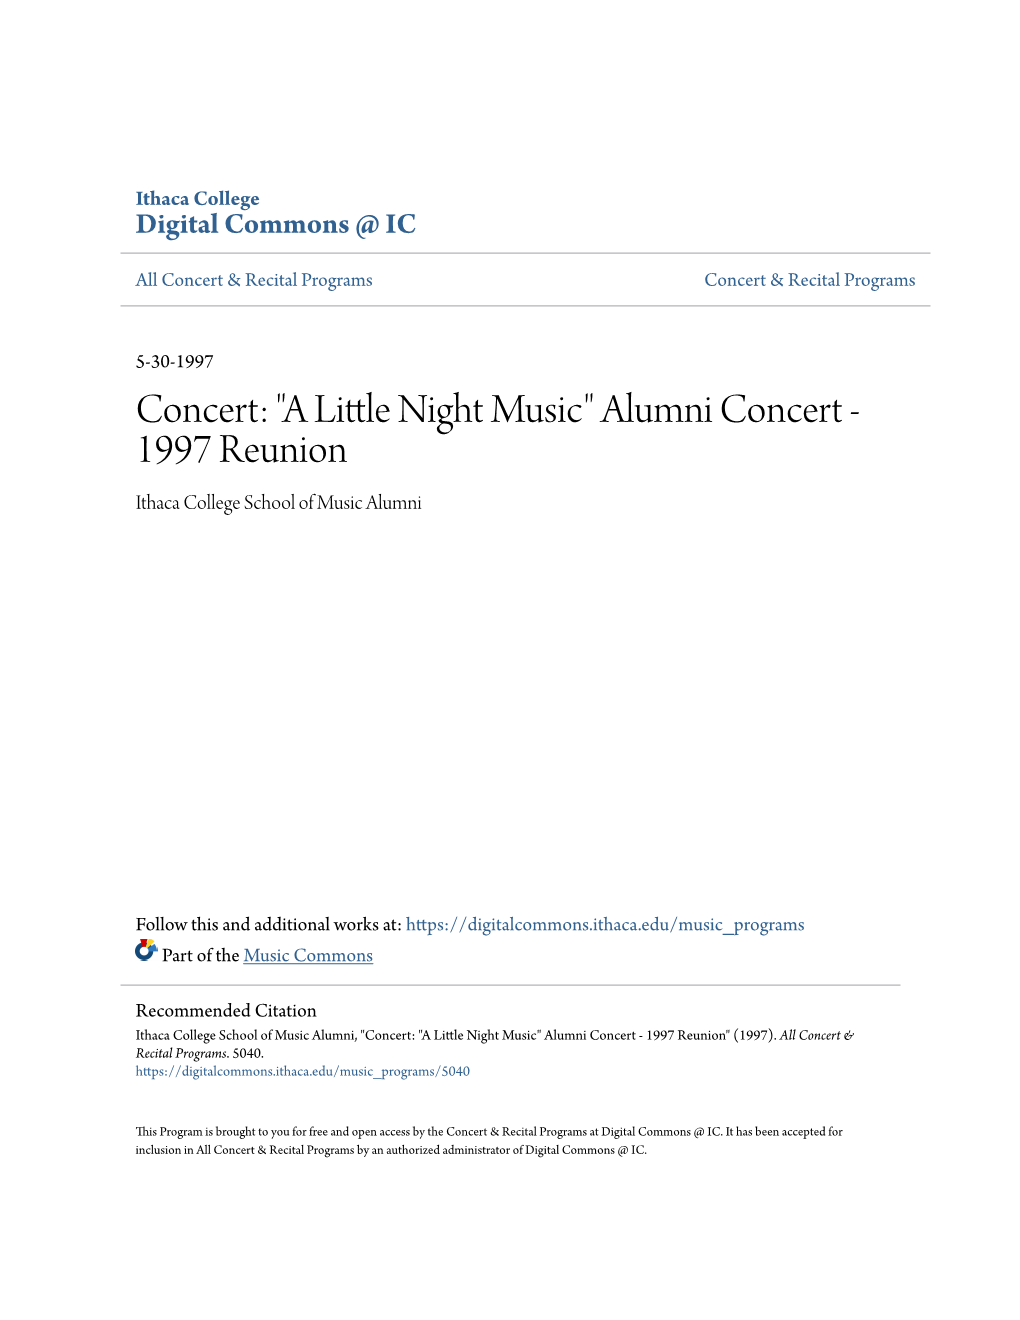 Concert: "A Little Night Music"